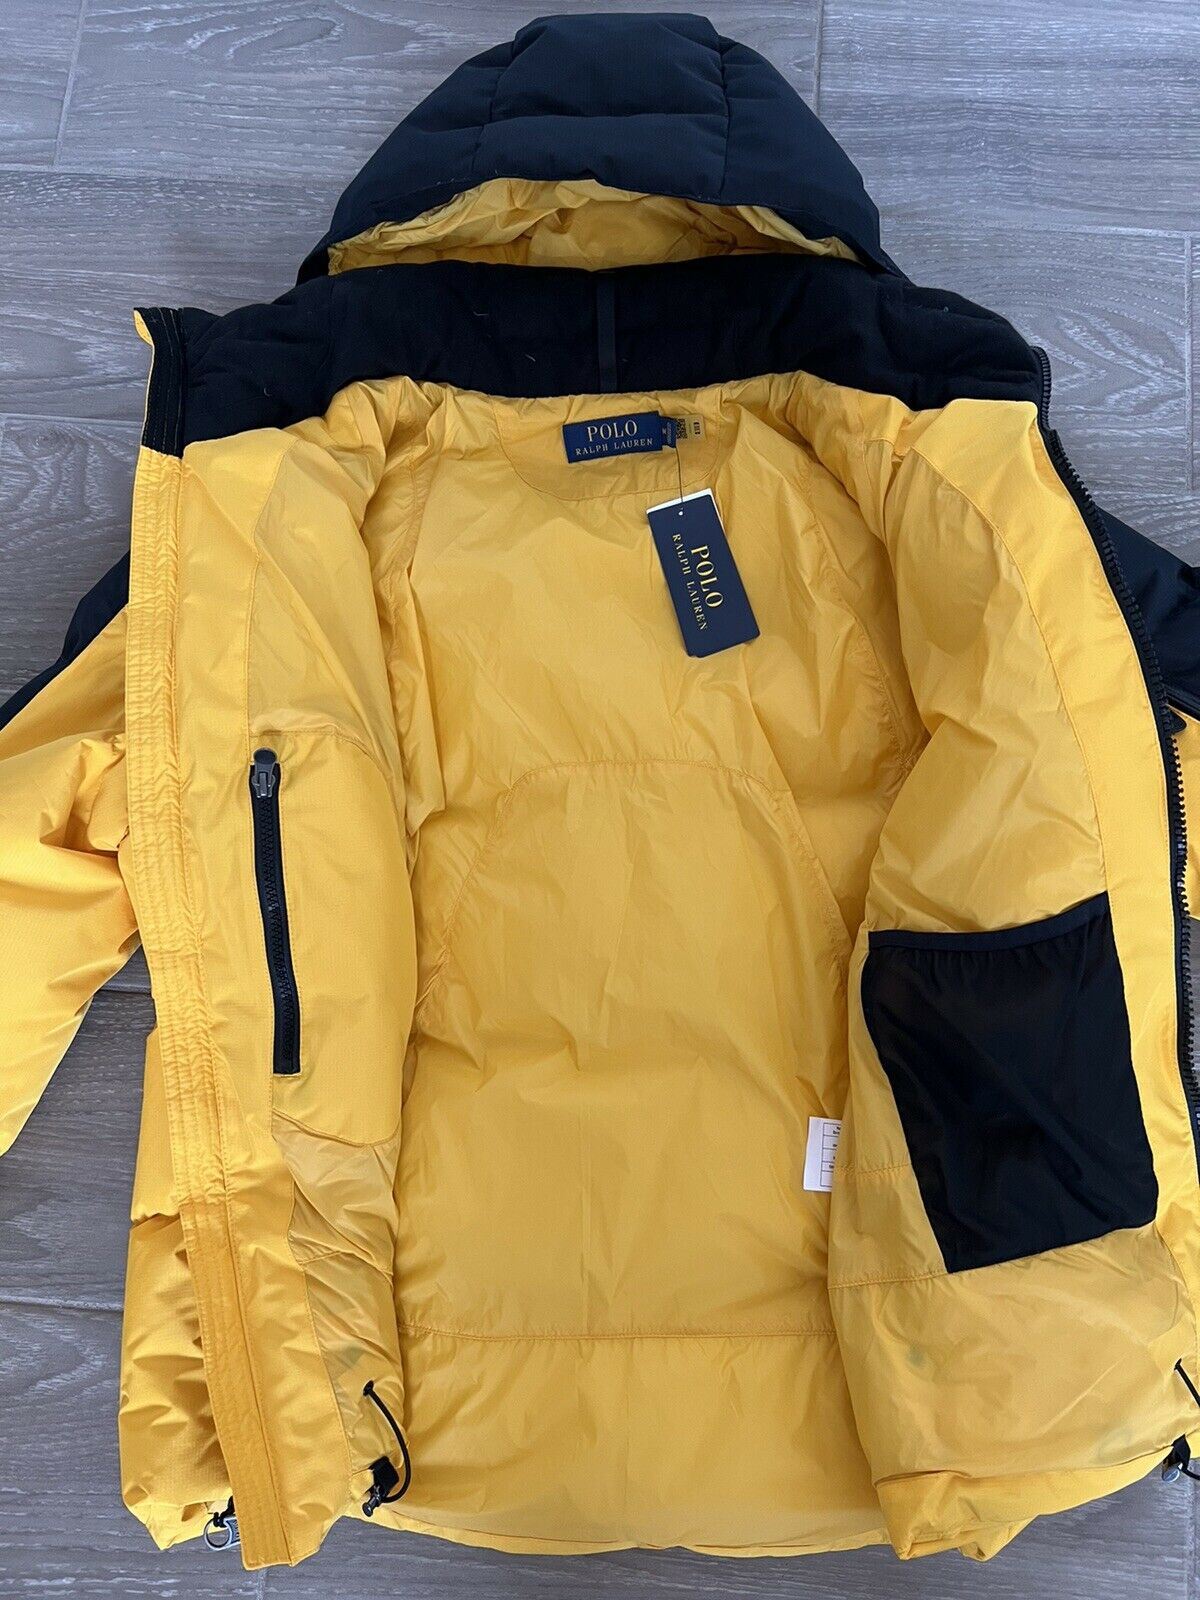 Мужская парка с капюшоном желтого/черного цвета Polo Ralph Lauren, размер NWT 348 долларов США, средняя куртка